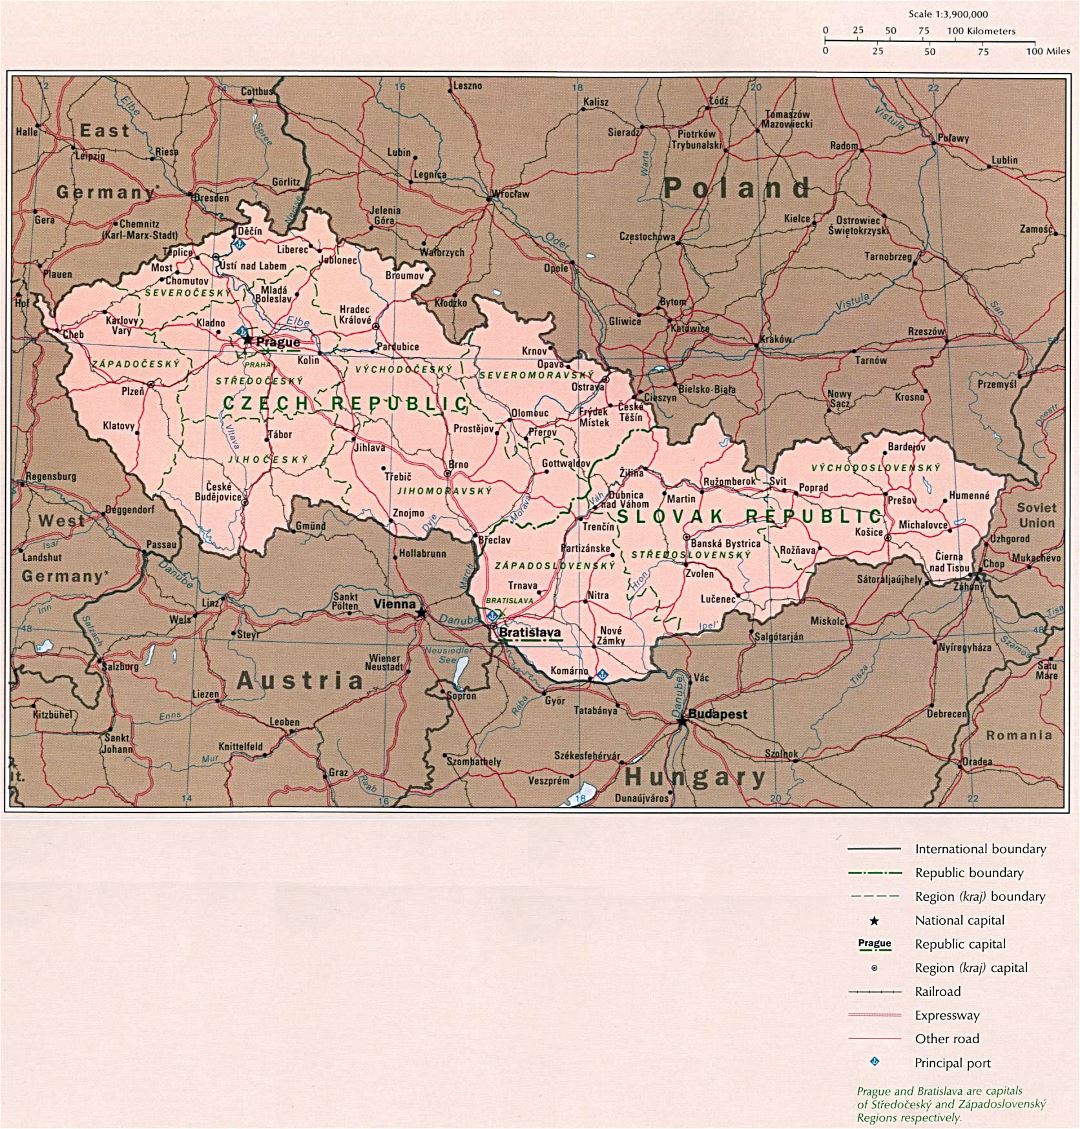 Mapa grande política detallada de la República Checa y Eslovaquia